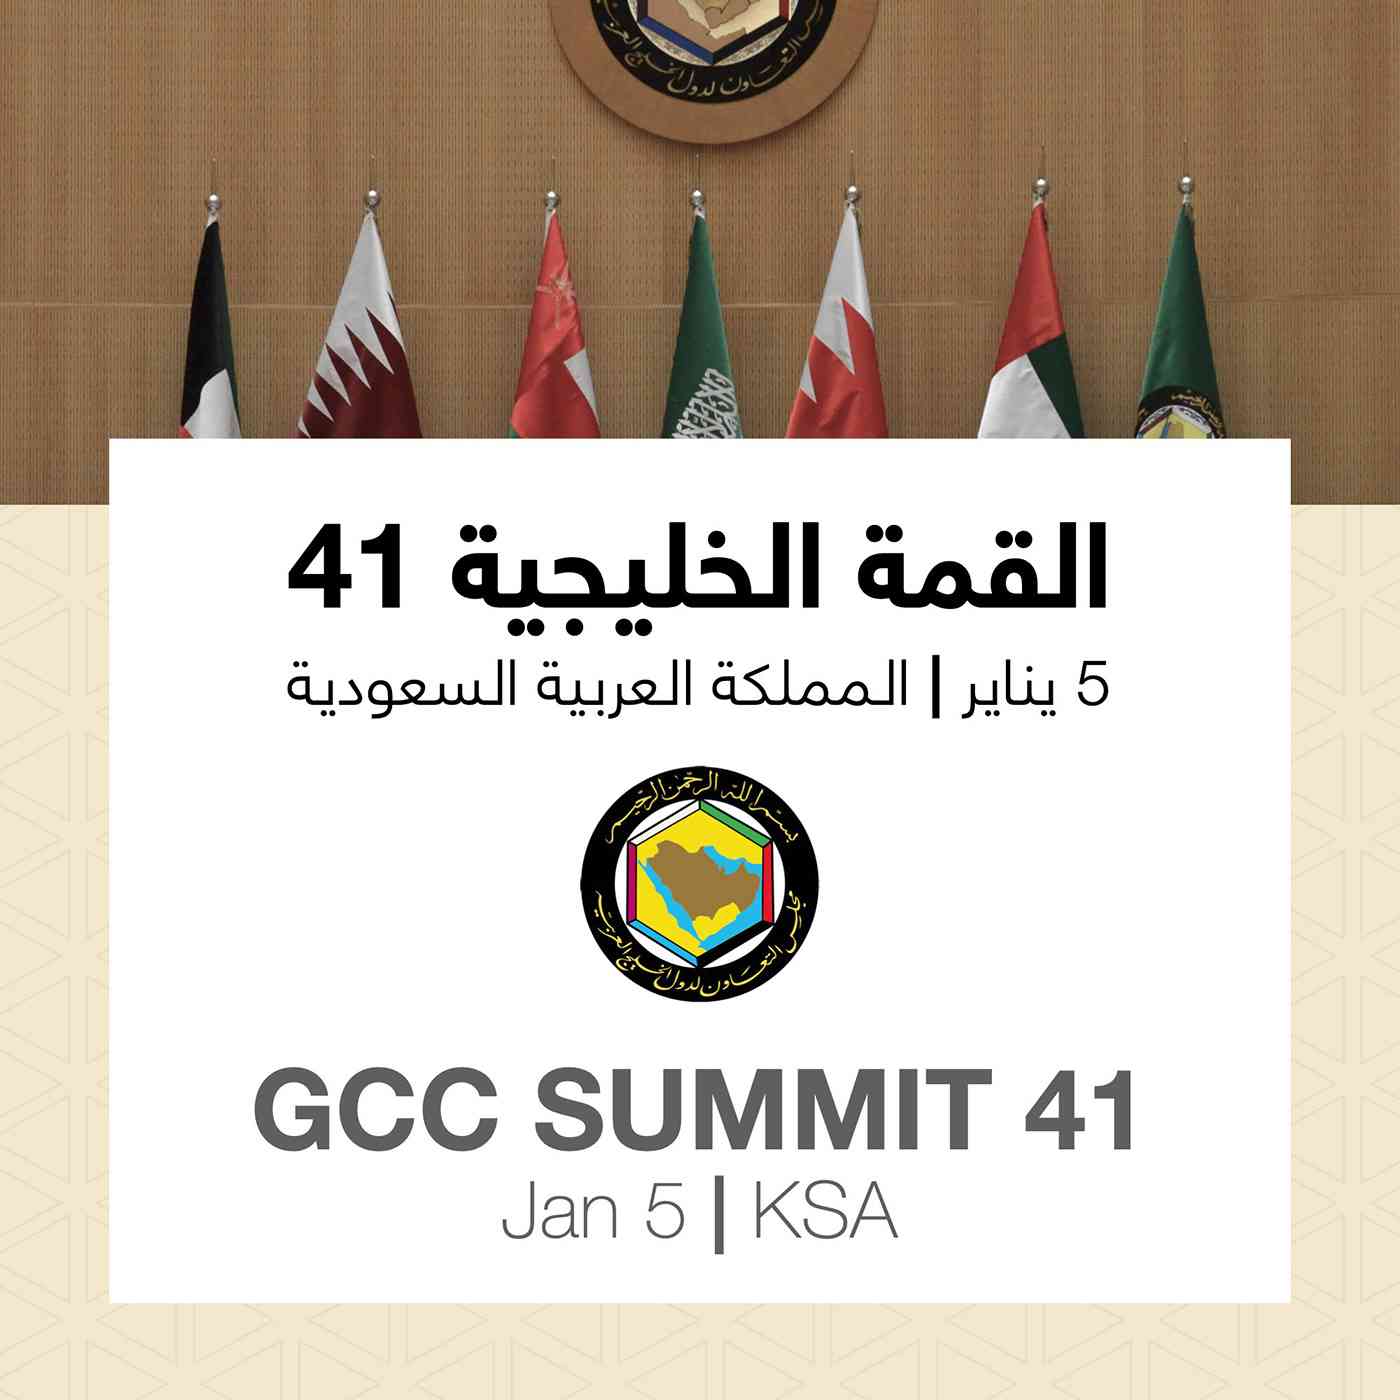 غدا الثلاثاء الع لا تستضيف القمة الـ41 لقادة مجلس التعاون الخليجي العرب والعالم الخليج العربي البيان